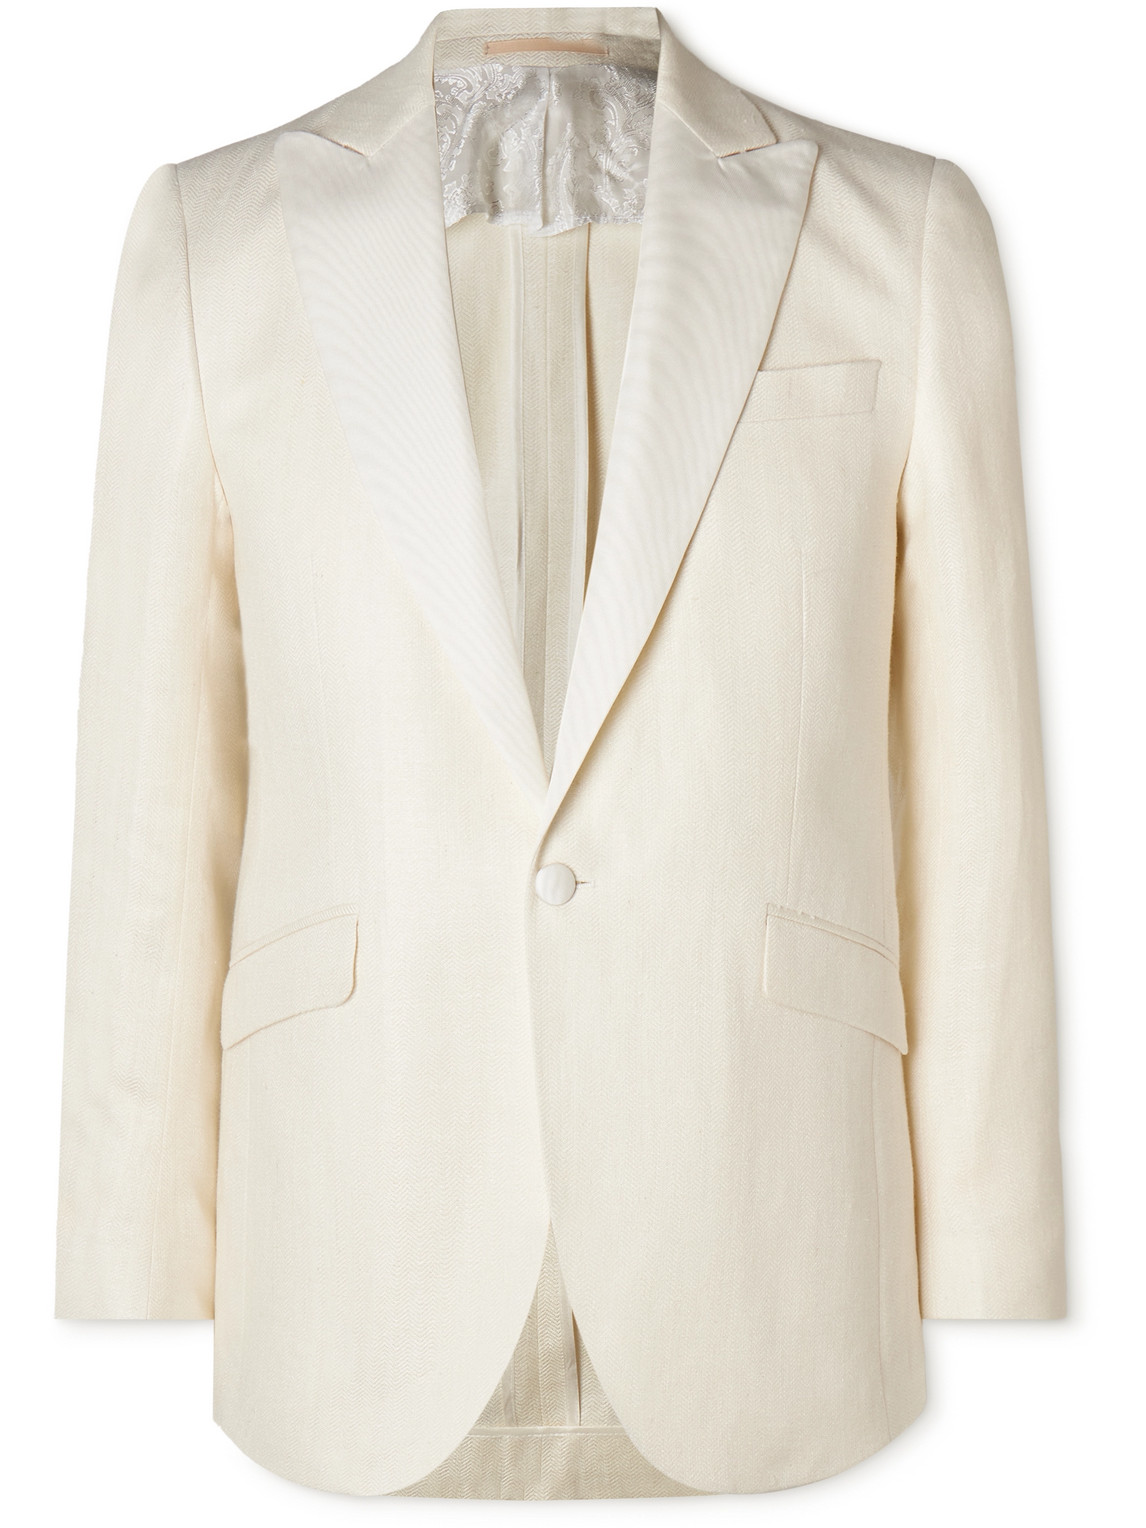 Grosgrain-Trimmed Herringbone Linen and Silk-Blend Tuxedo Jacket